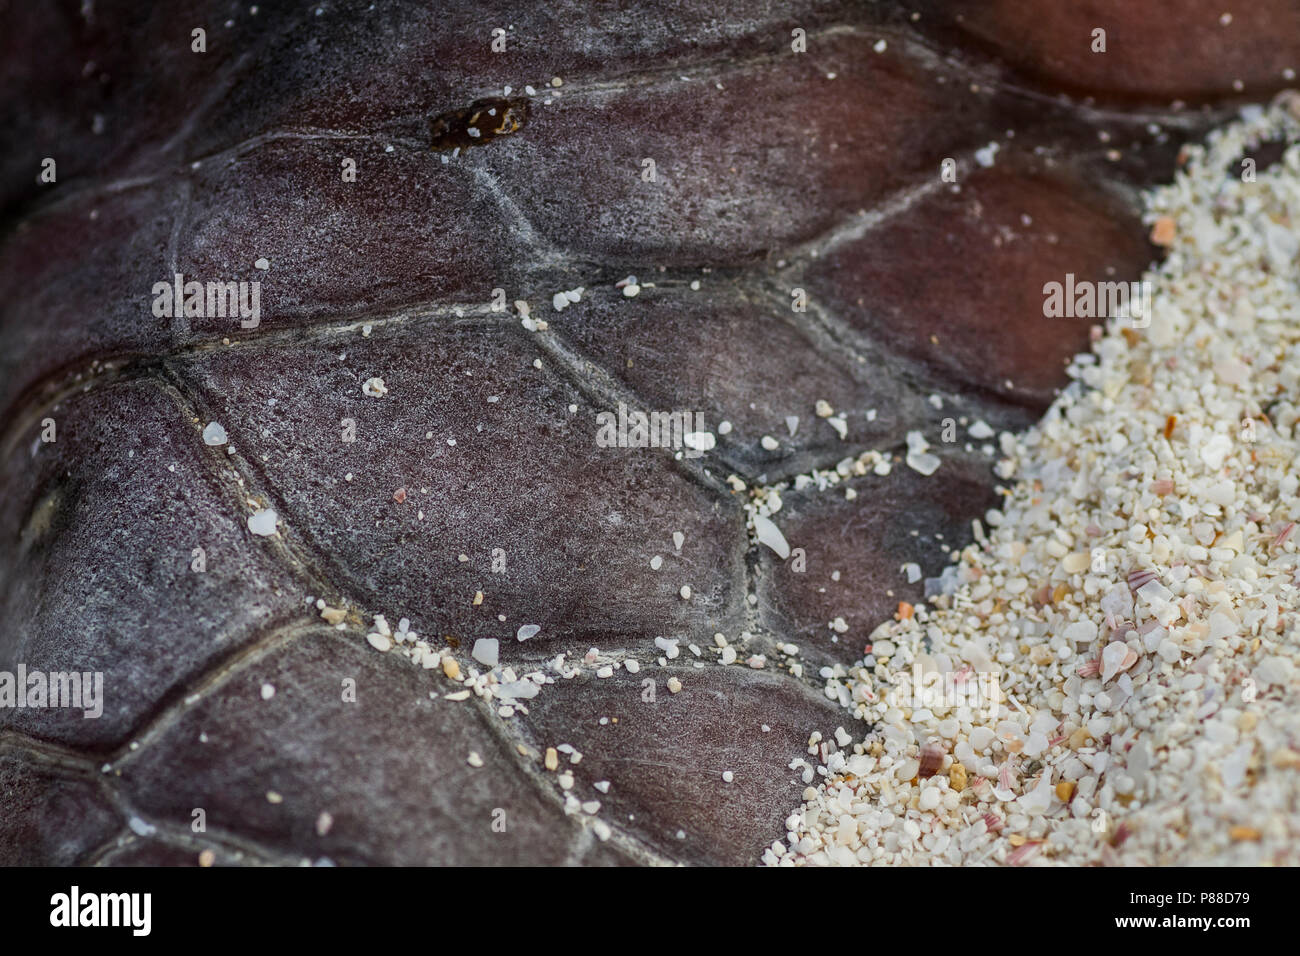 Loggerhead Turtle - Unechte Karettschildkröte - Caretta caretta, Oman, skin of a dead carcass at beach Stock Photo